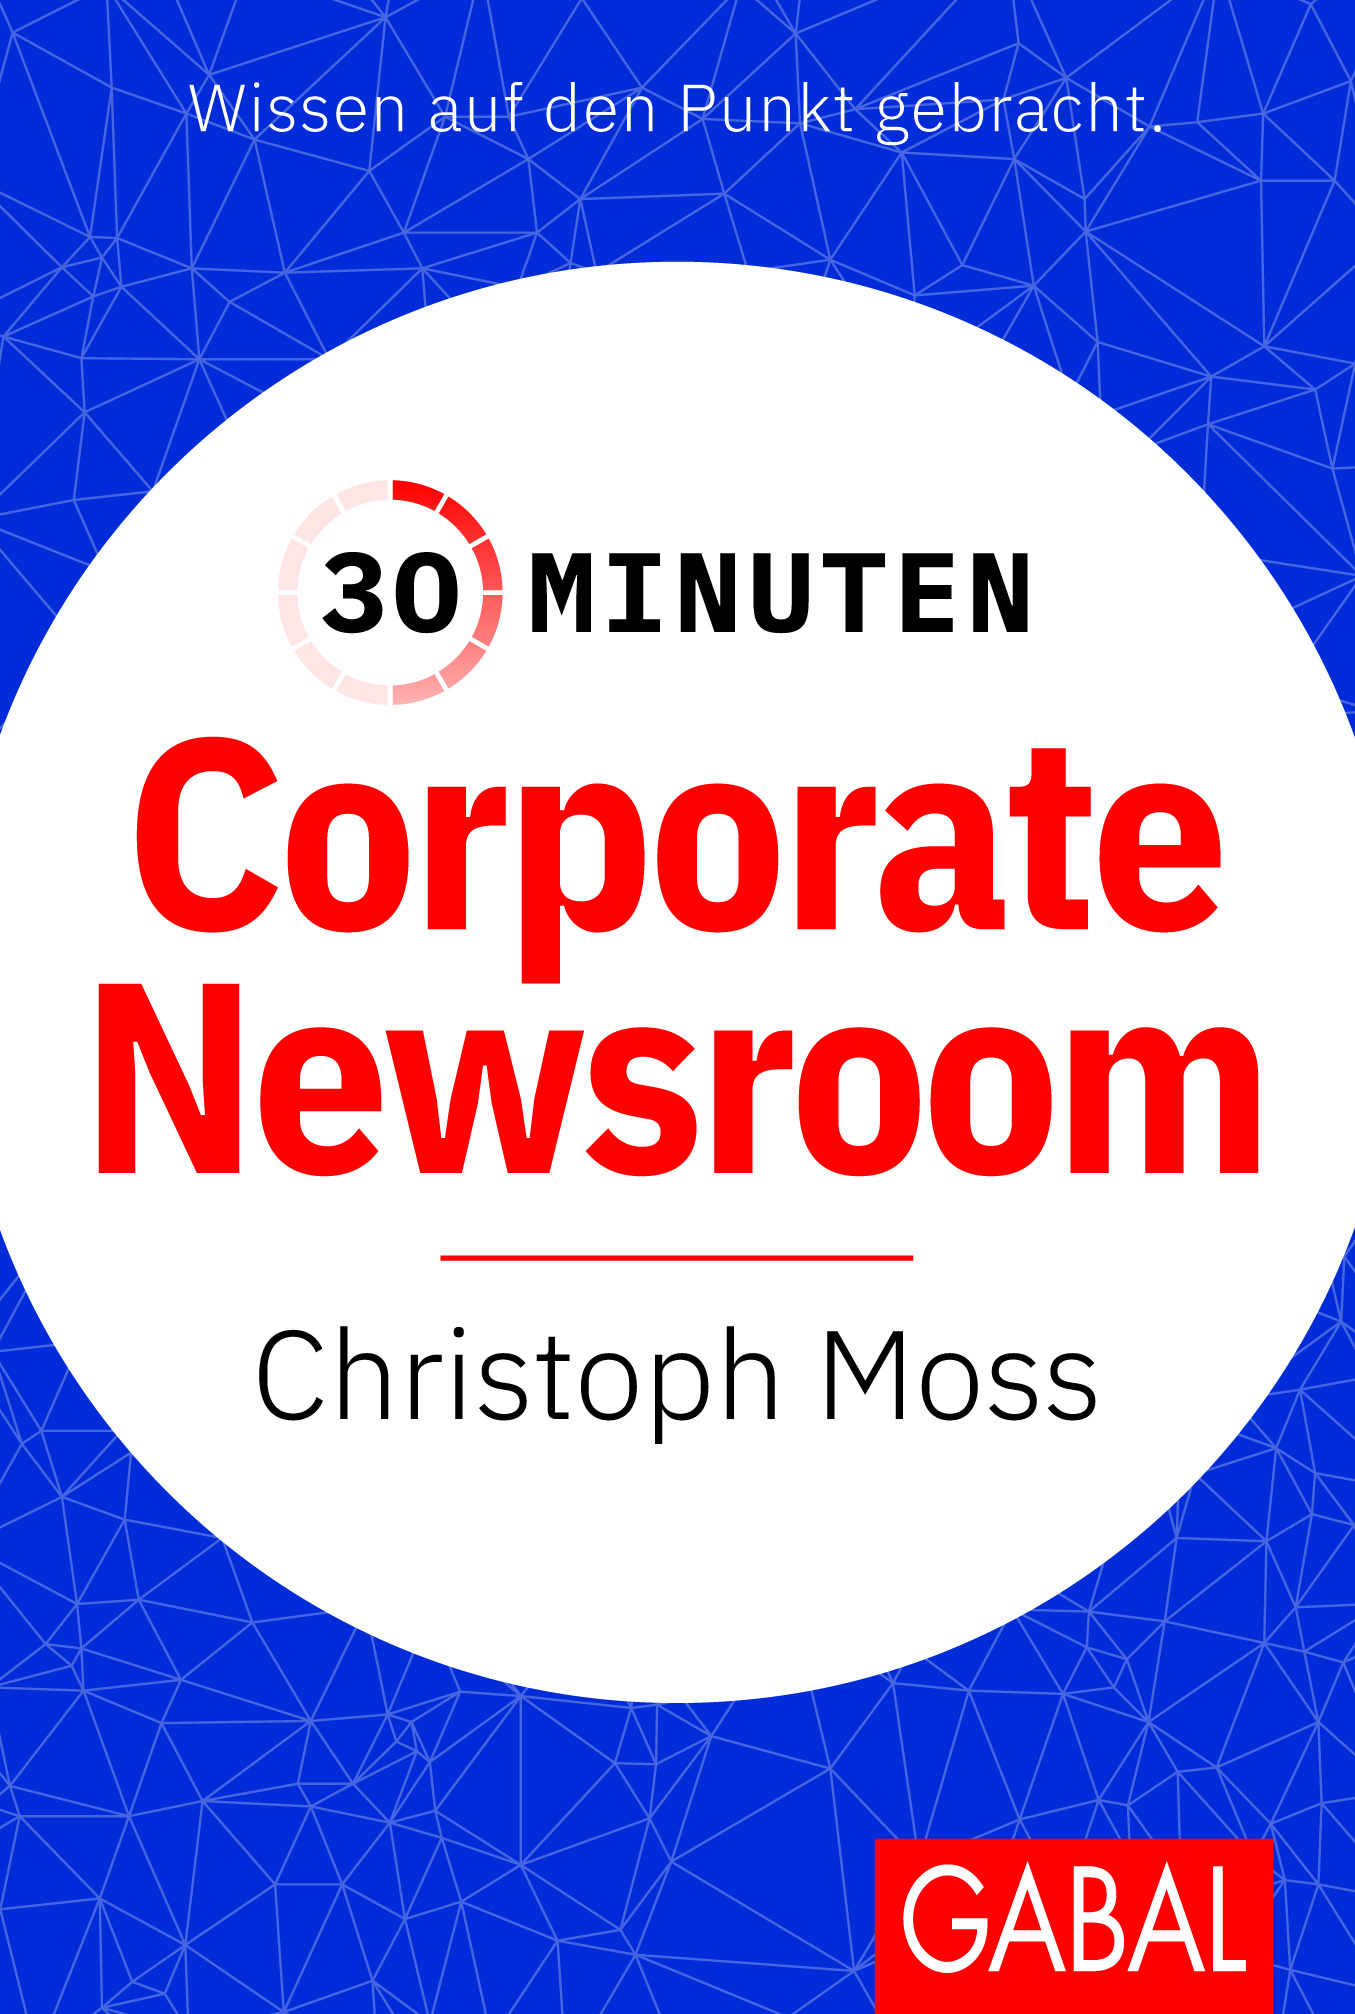 30minuten corporate newsroom